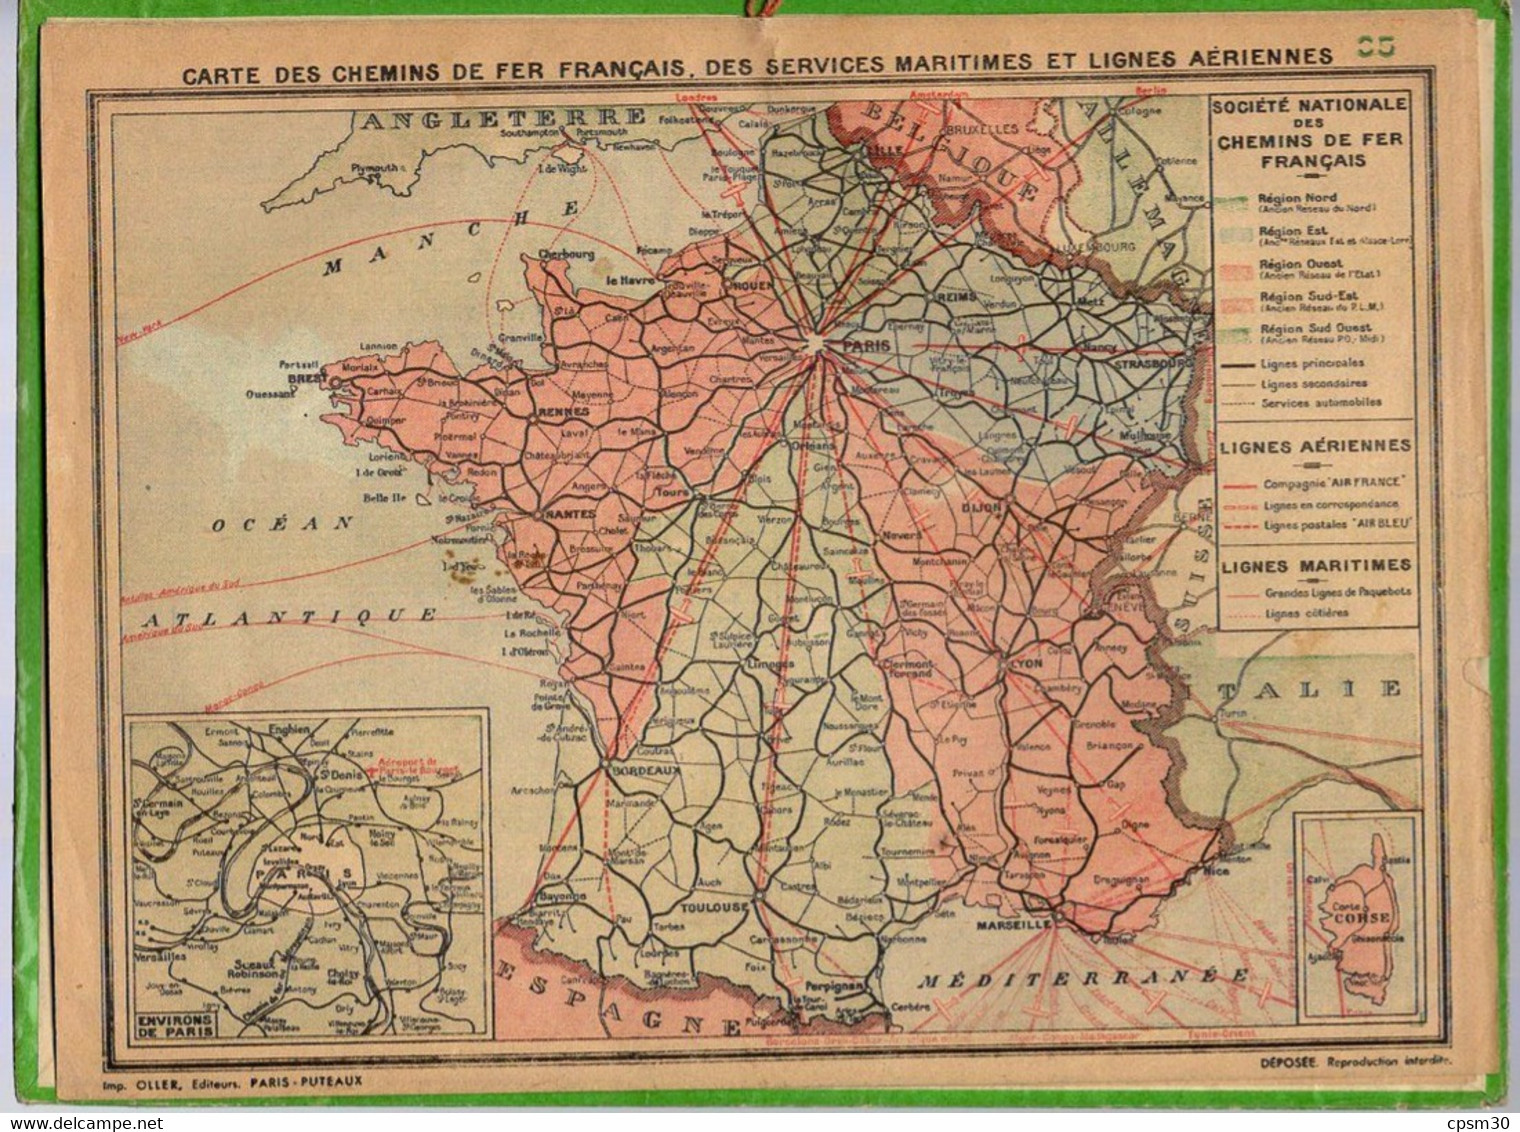 CALENDRIER GF 1940 - Le Port De Martigues, Dessin De ??R Michault??, Imprimeur Oller Puteaux - Big : 1921-40